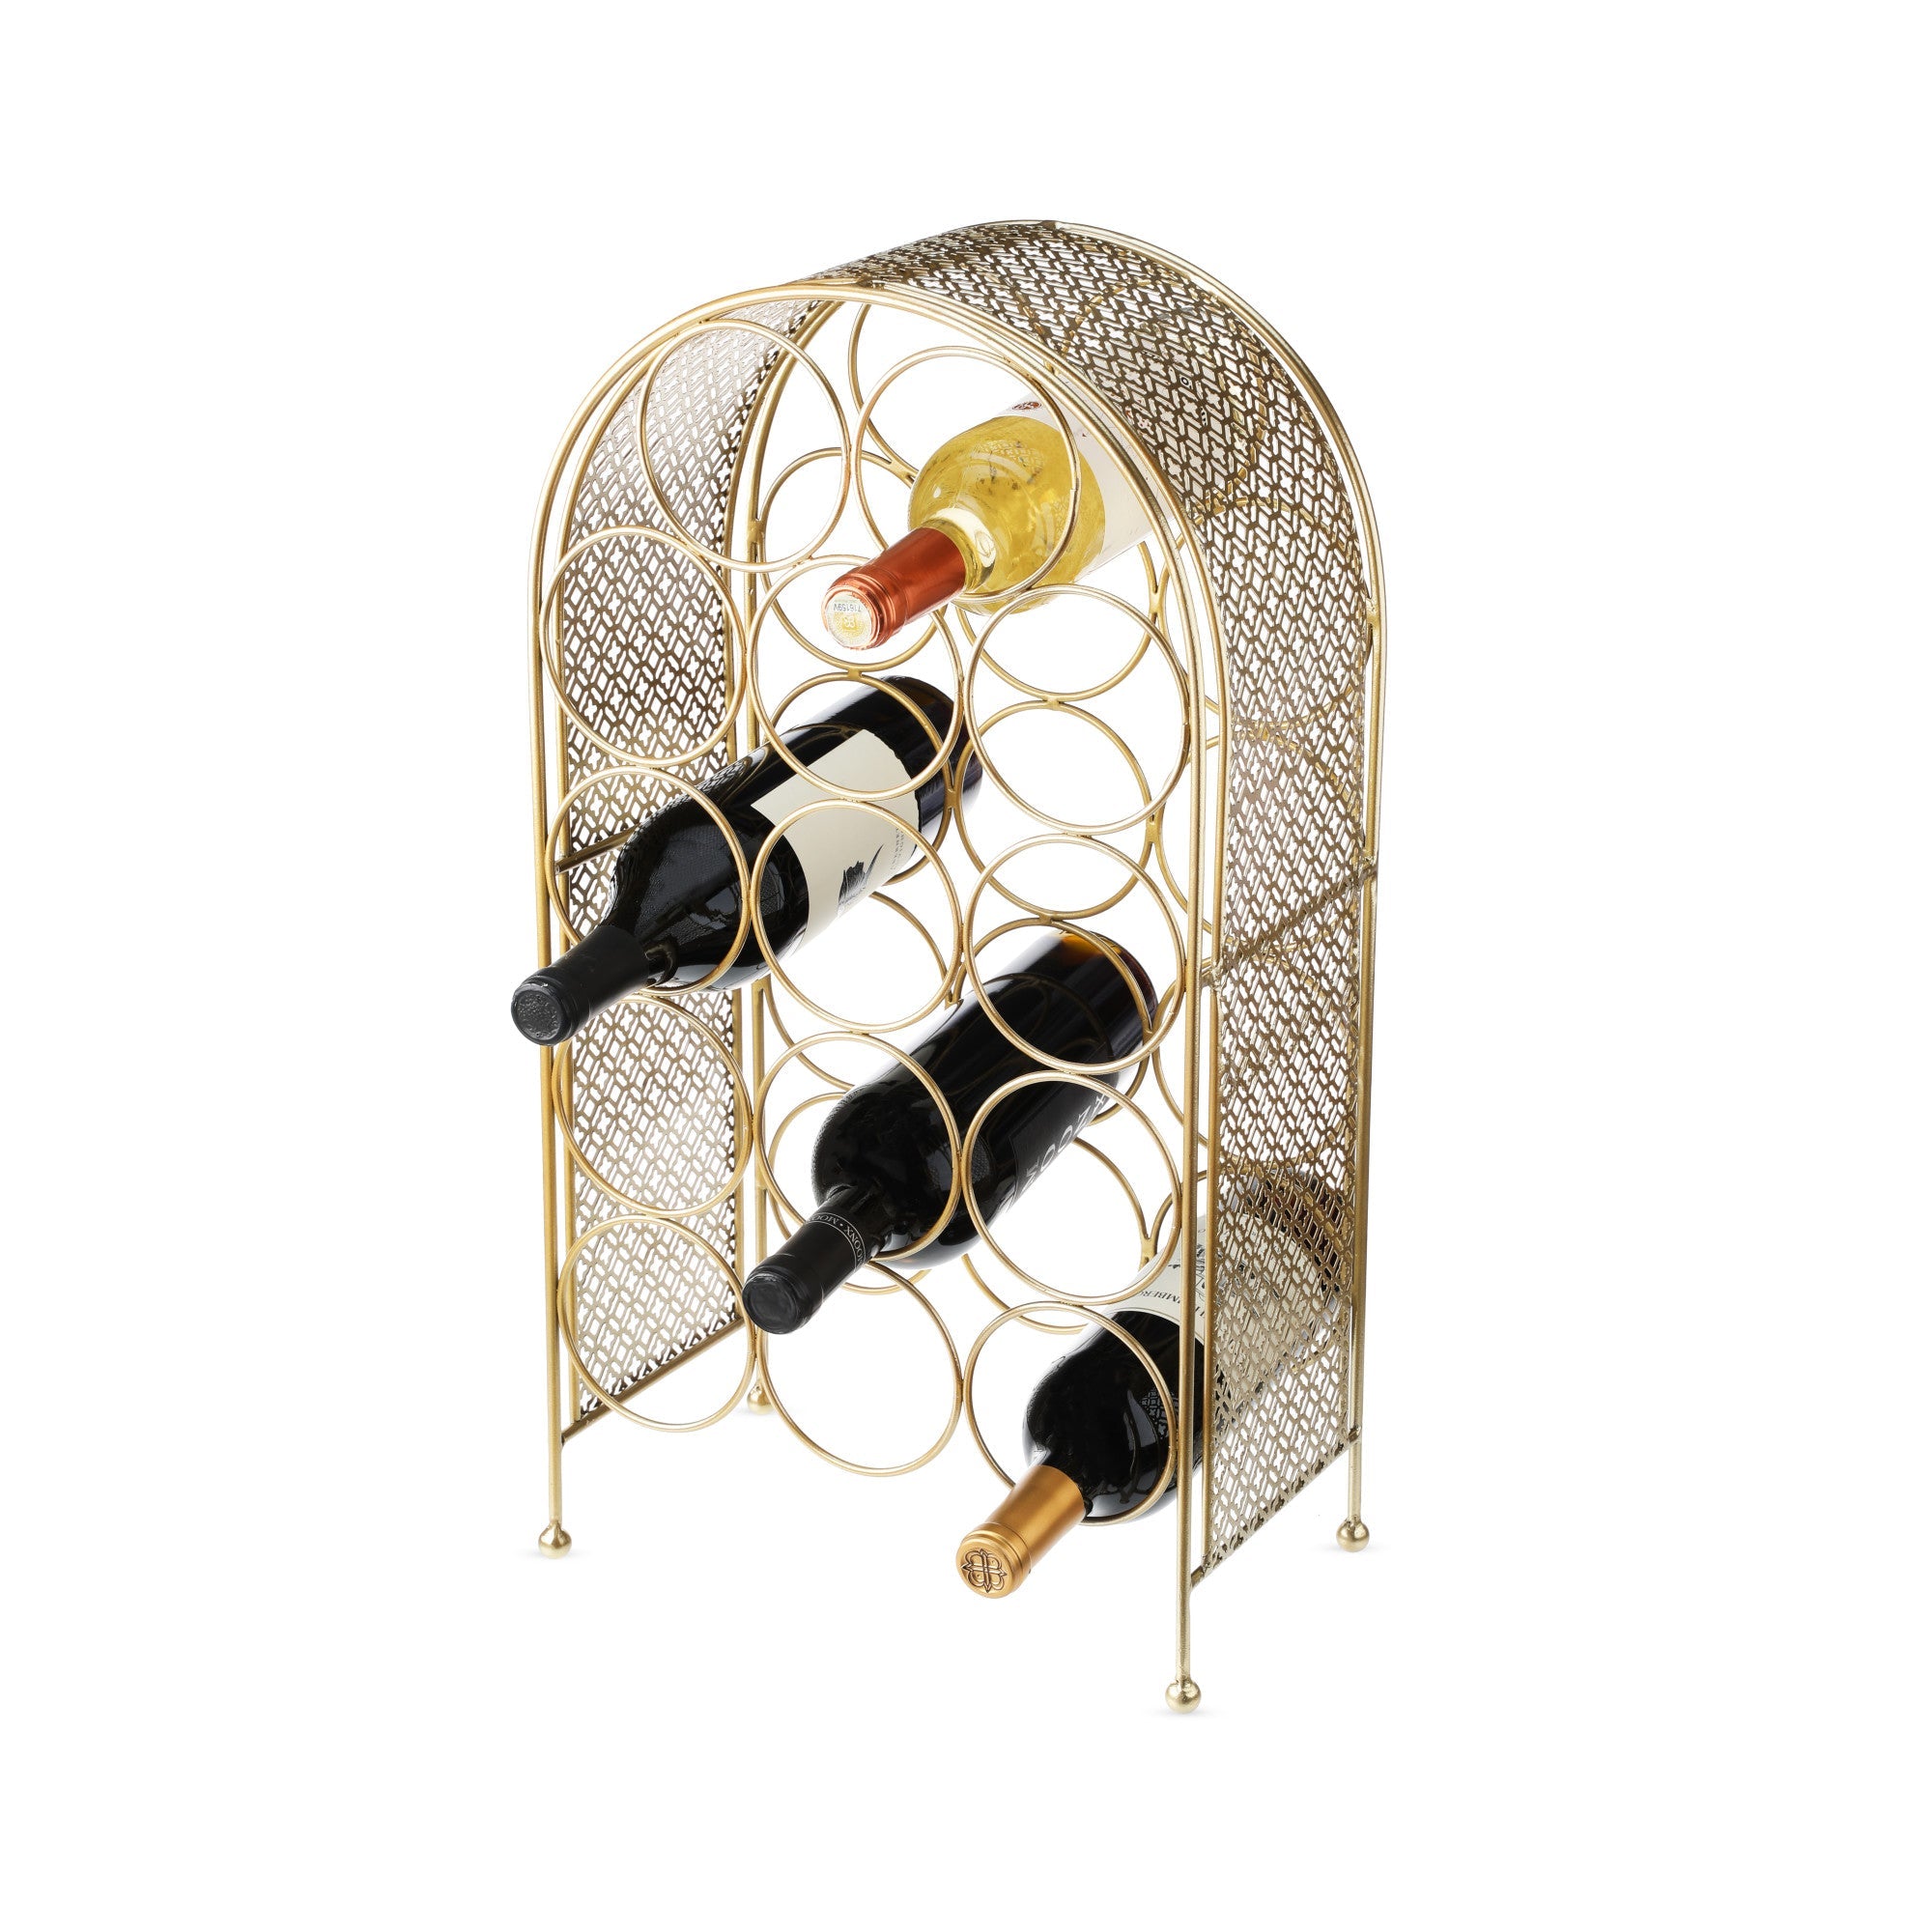 Trellis 14 Bottle Wine Rack by Twine (10251) Wine Accessories Twine